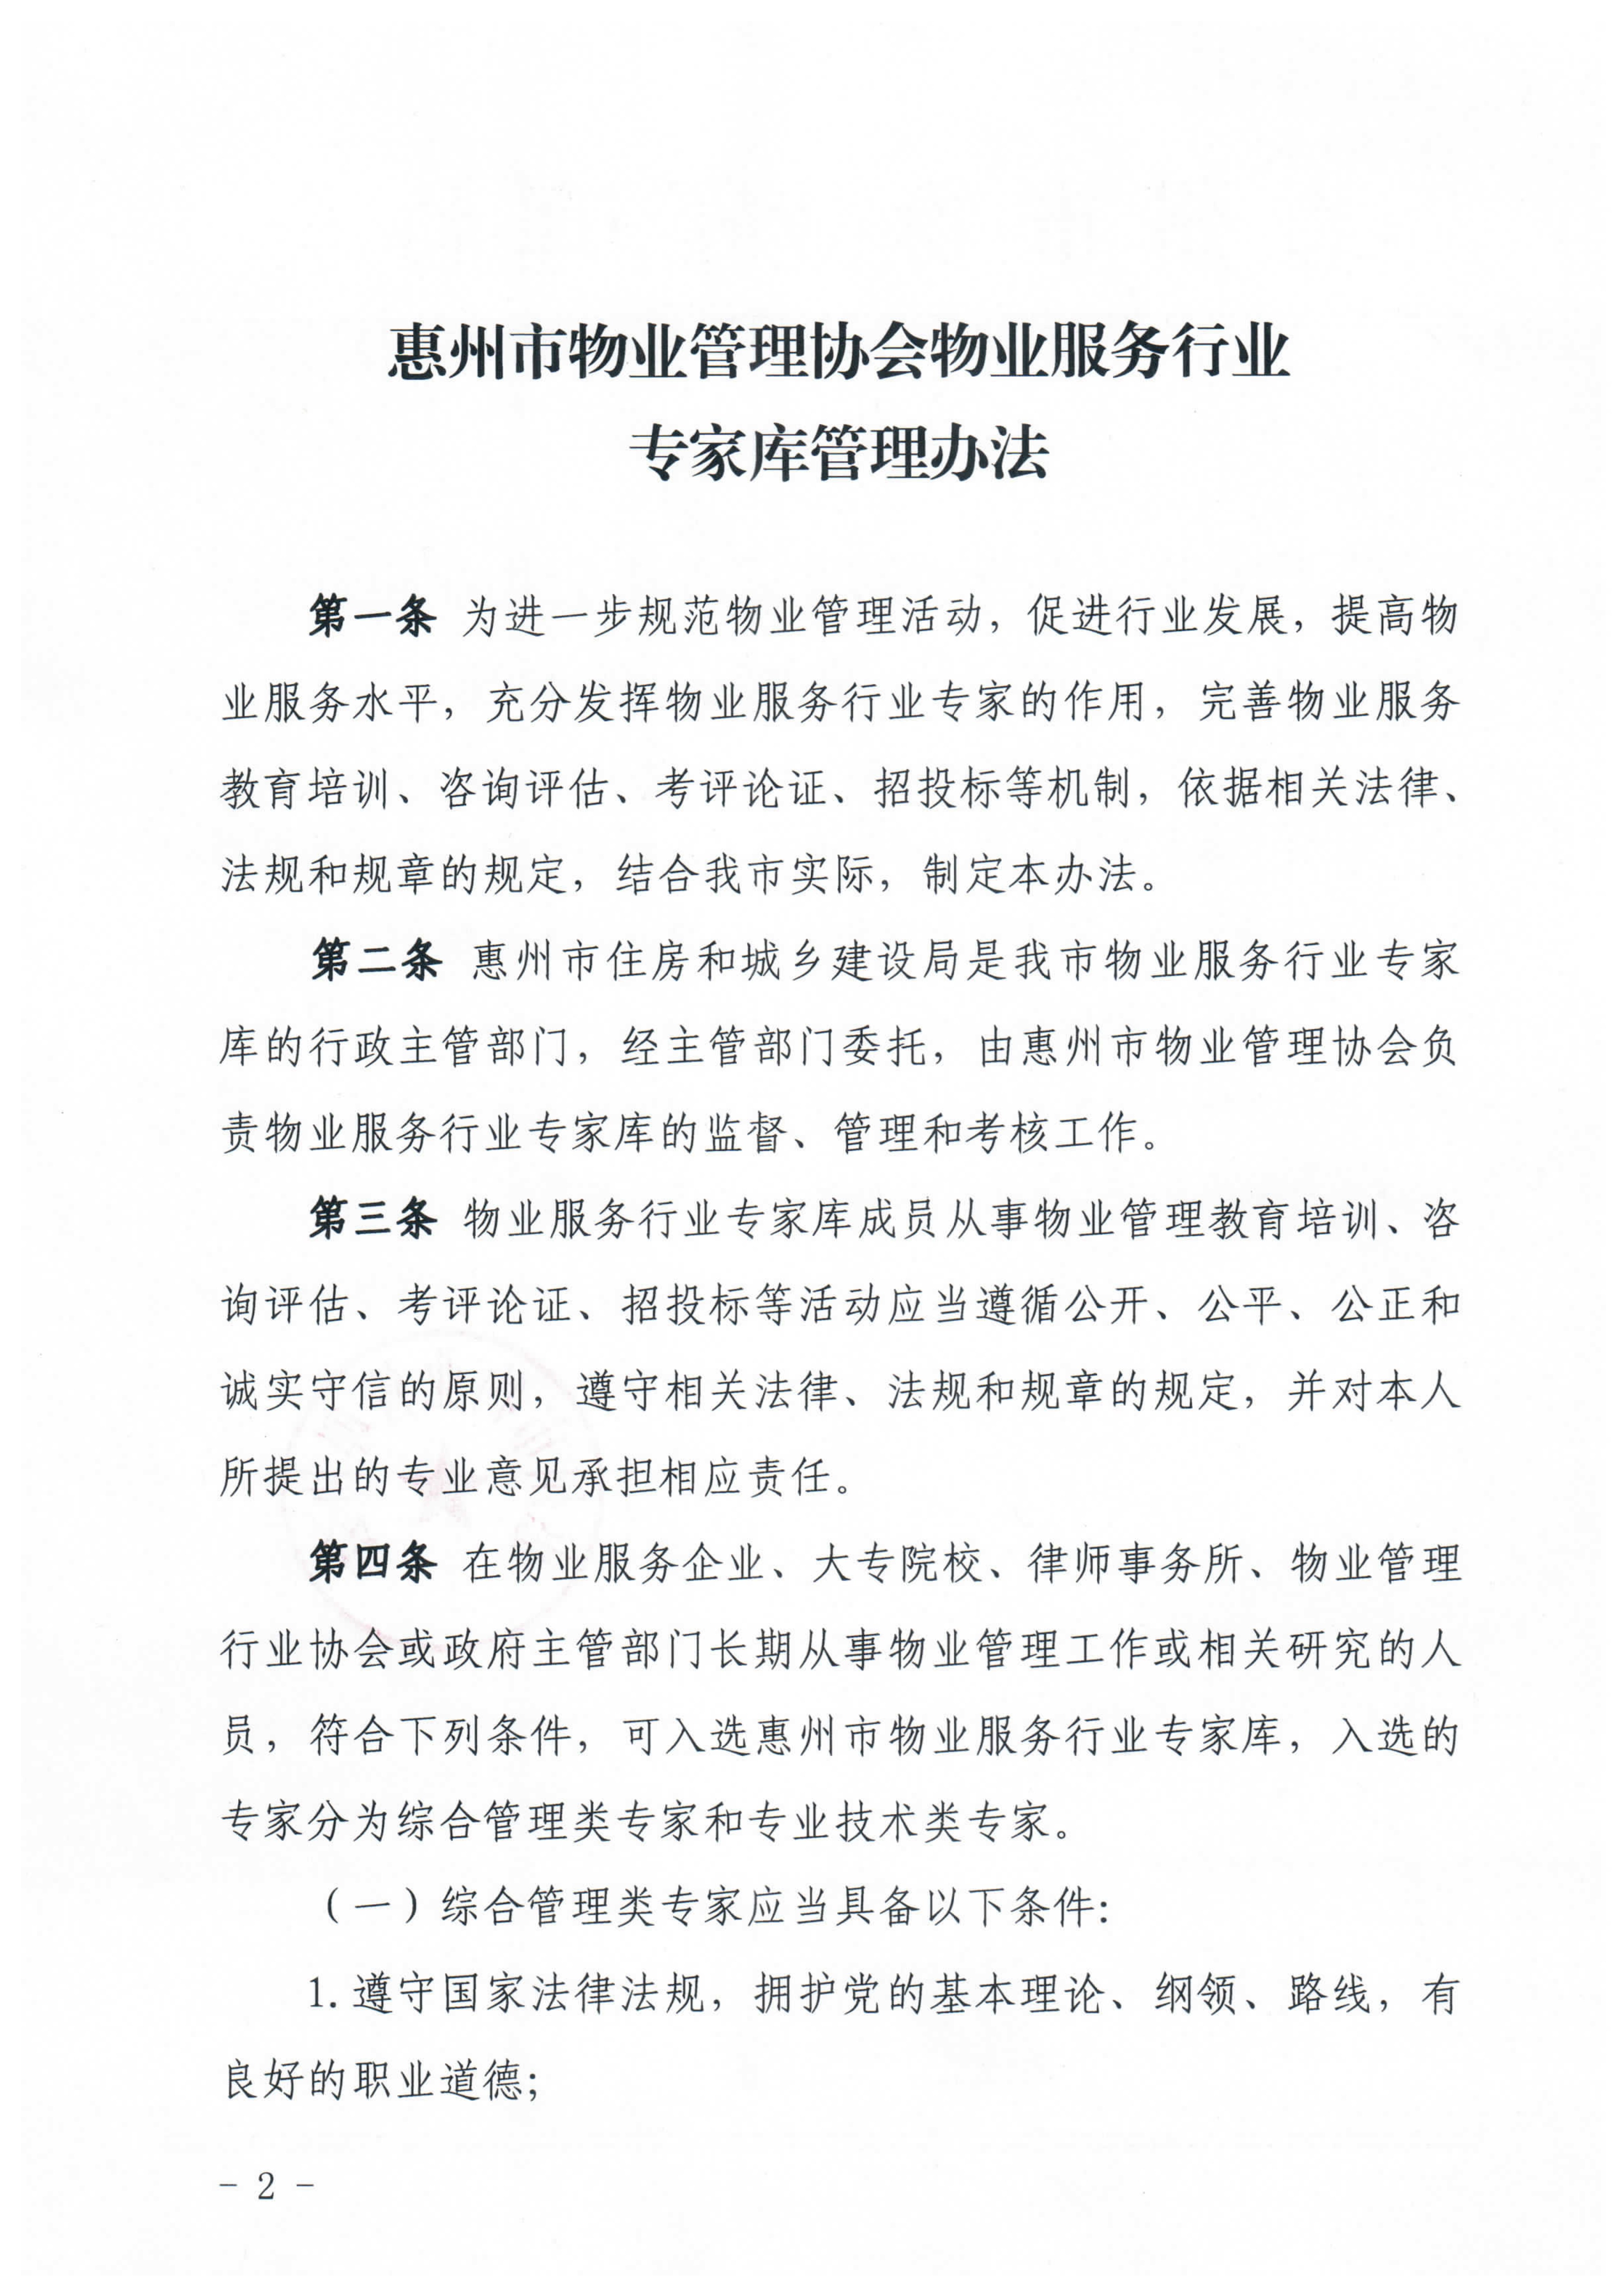 关于印发《惠州市物业管理协会物业服务行业专家库管理办法》的通知_2.jpg